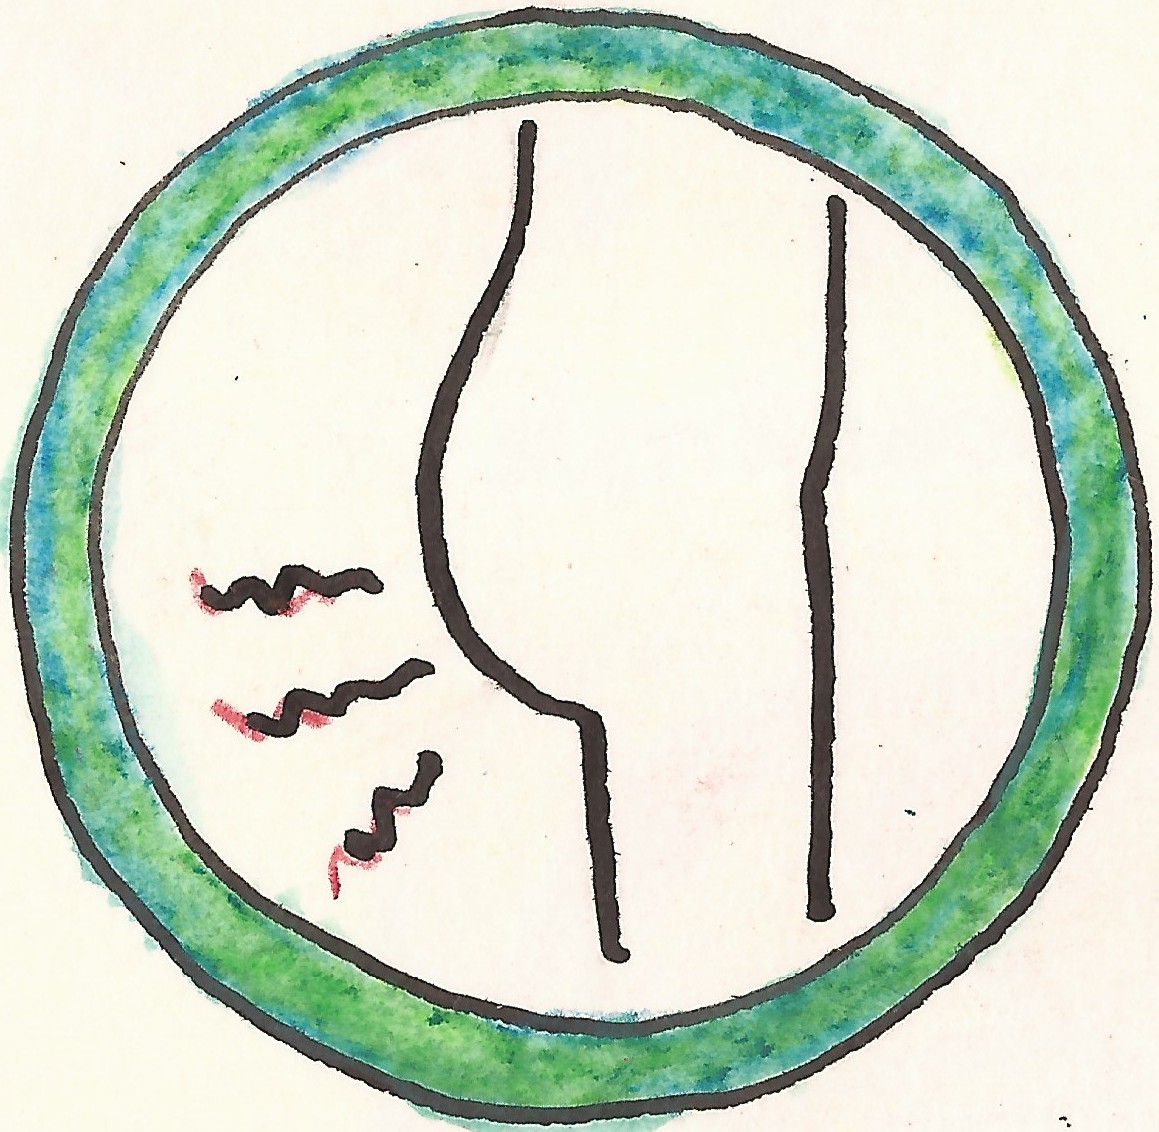 piktogram bolesti kolem ritniho otvoru zelená